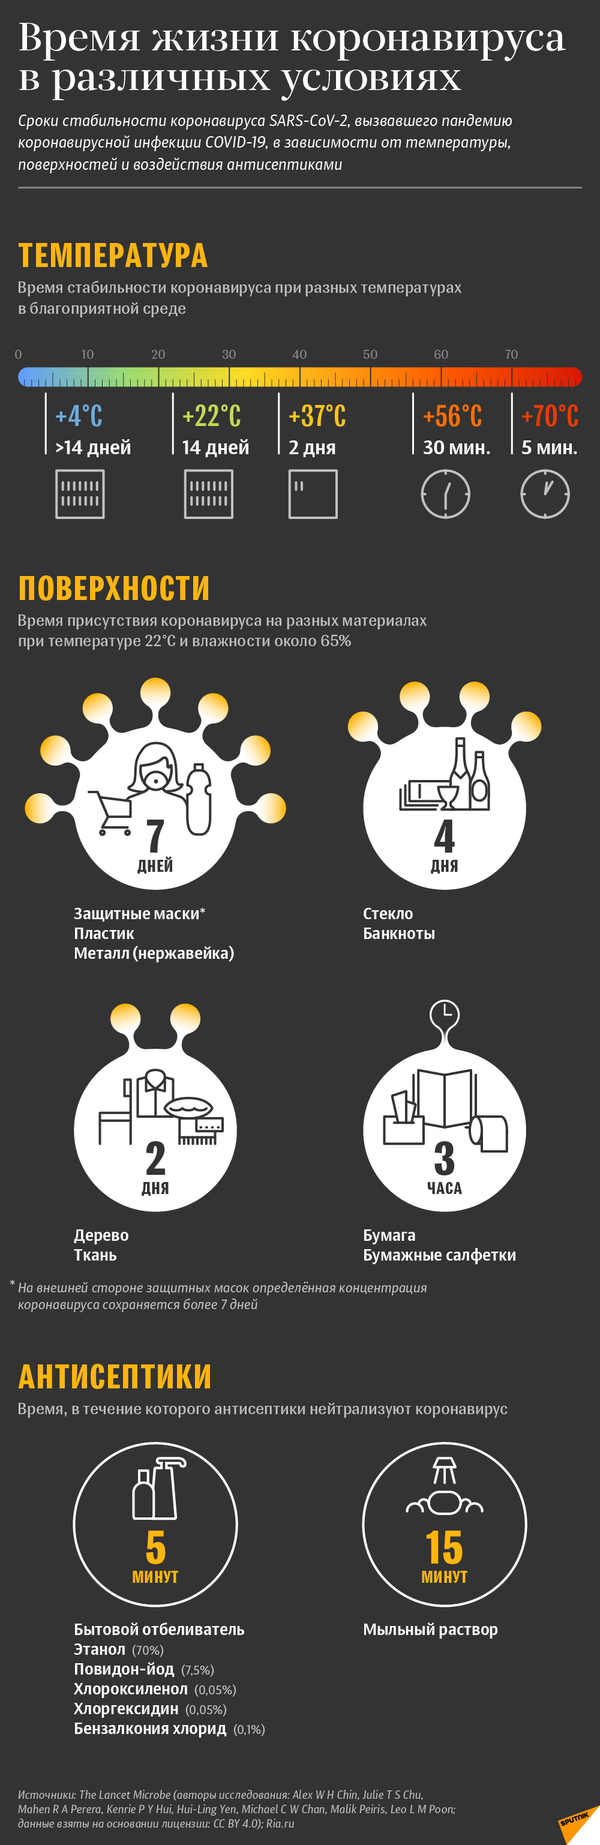 Инфографика: Где коронавирус живучее и чем его убить - Sputnik Азербайджан